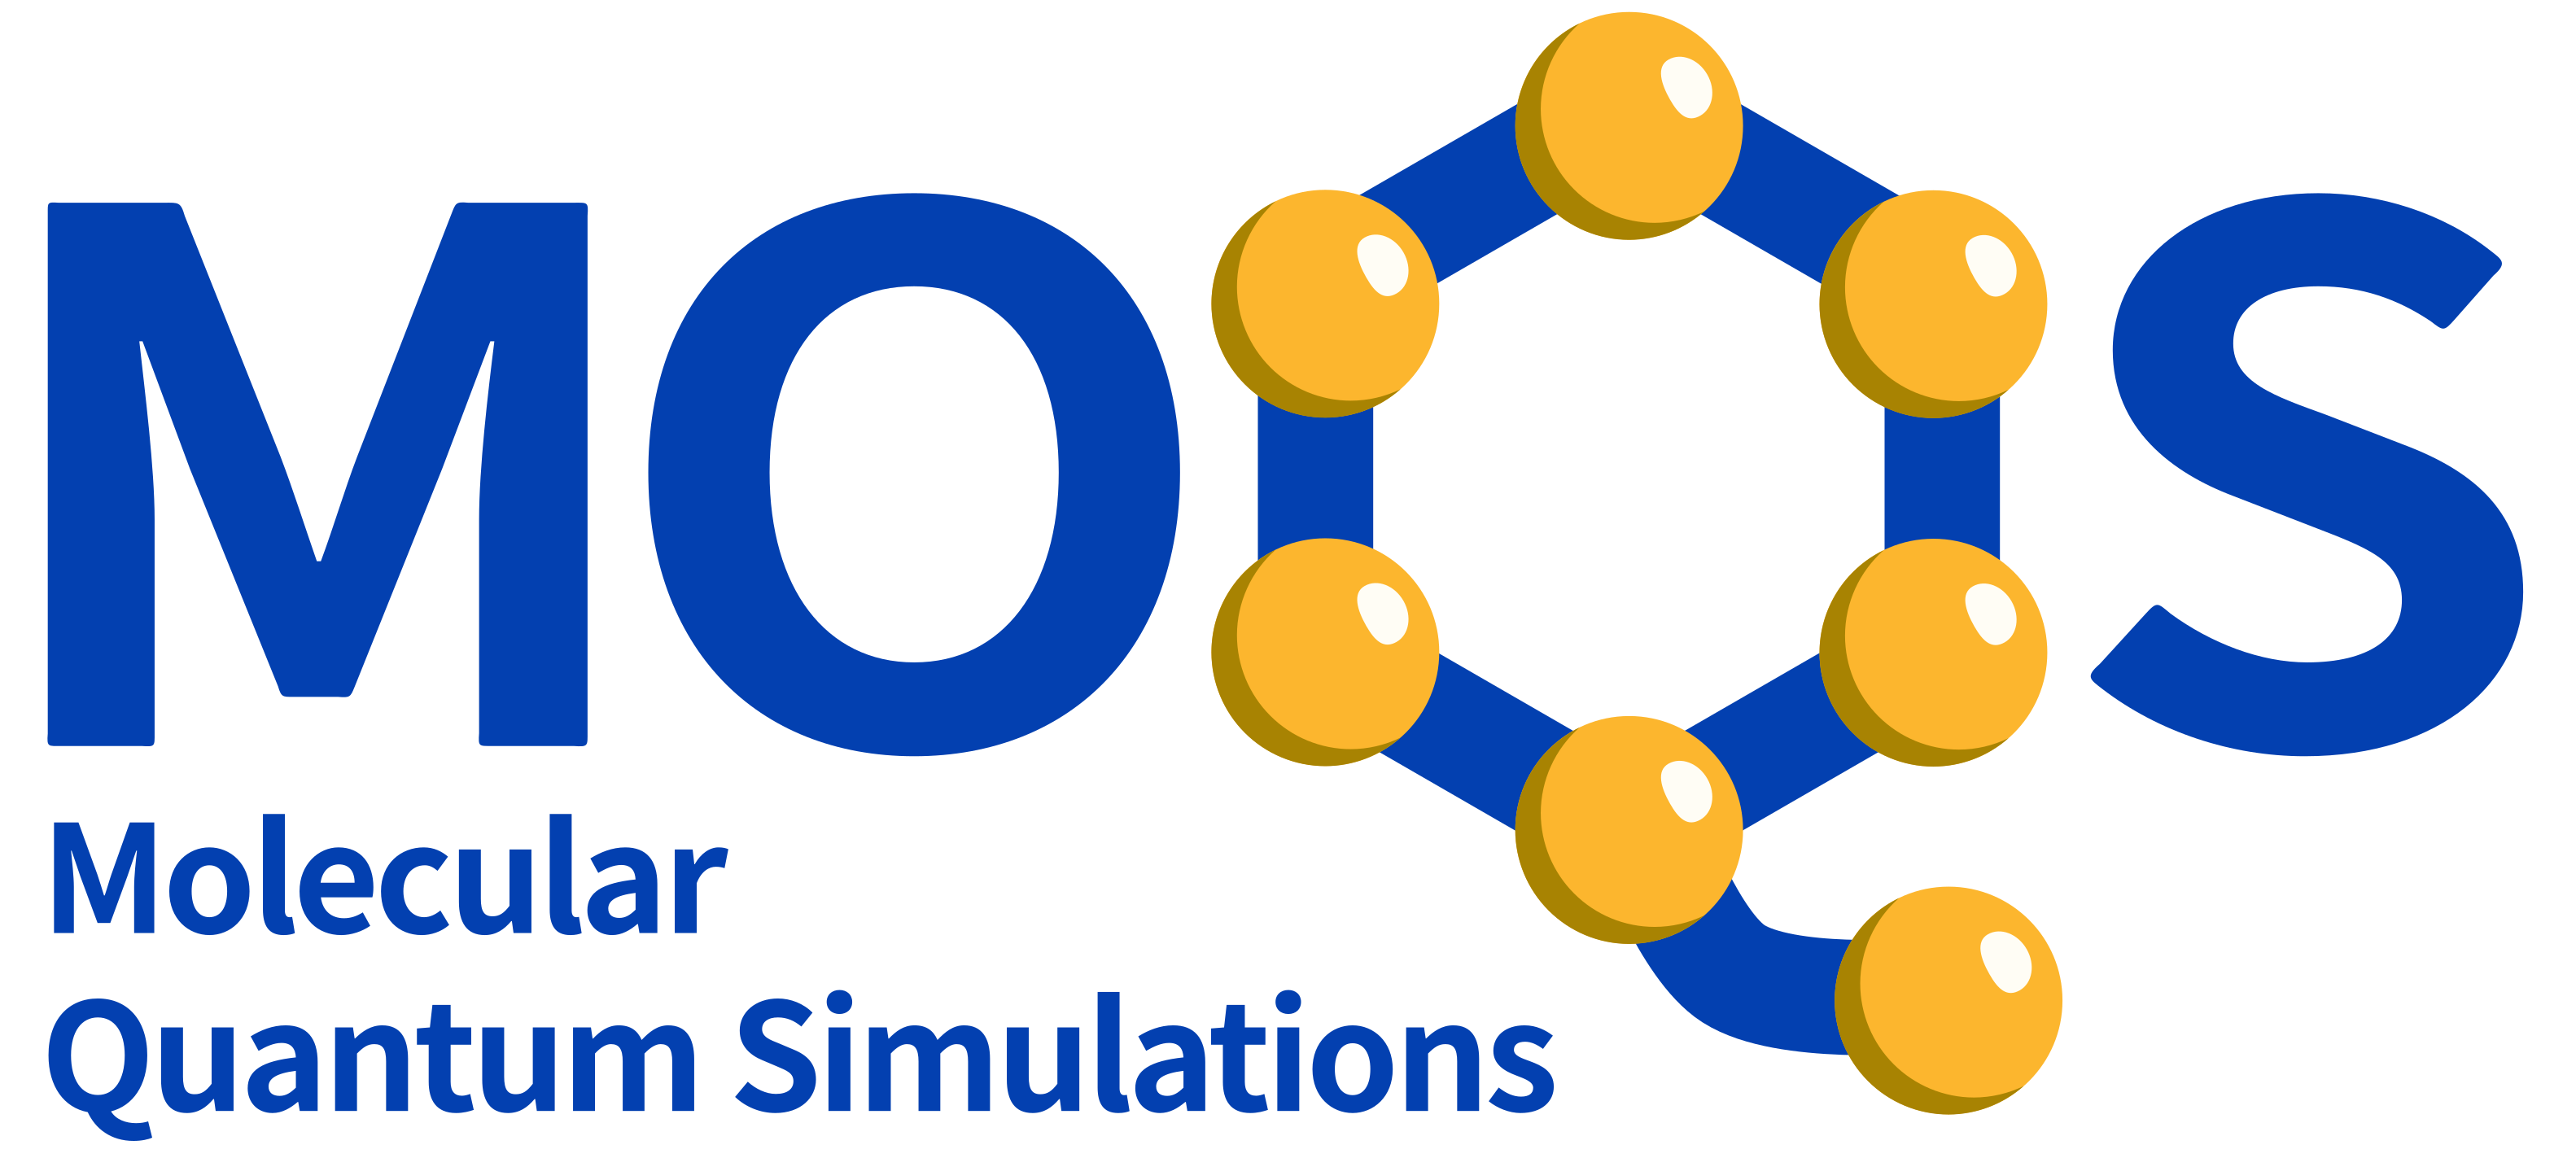 MoQS: Molecular Quantum Simulations